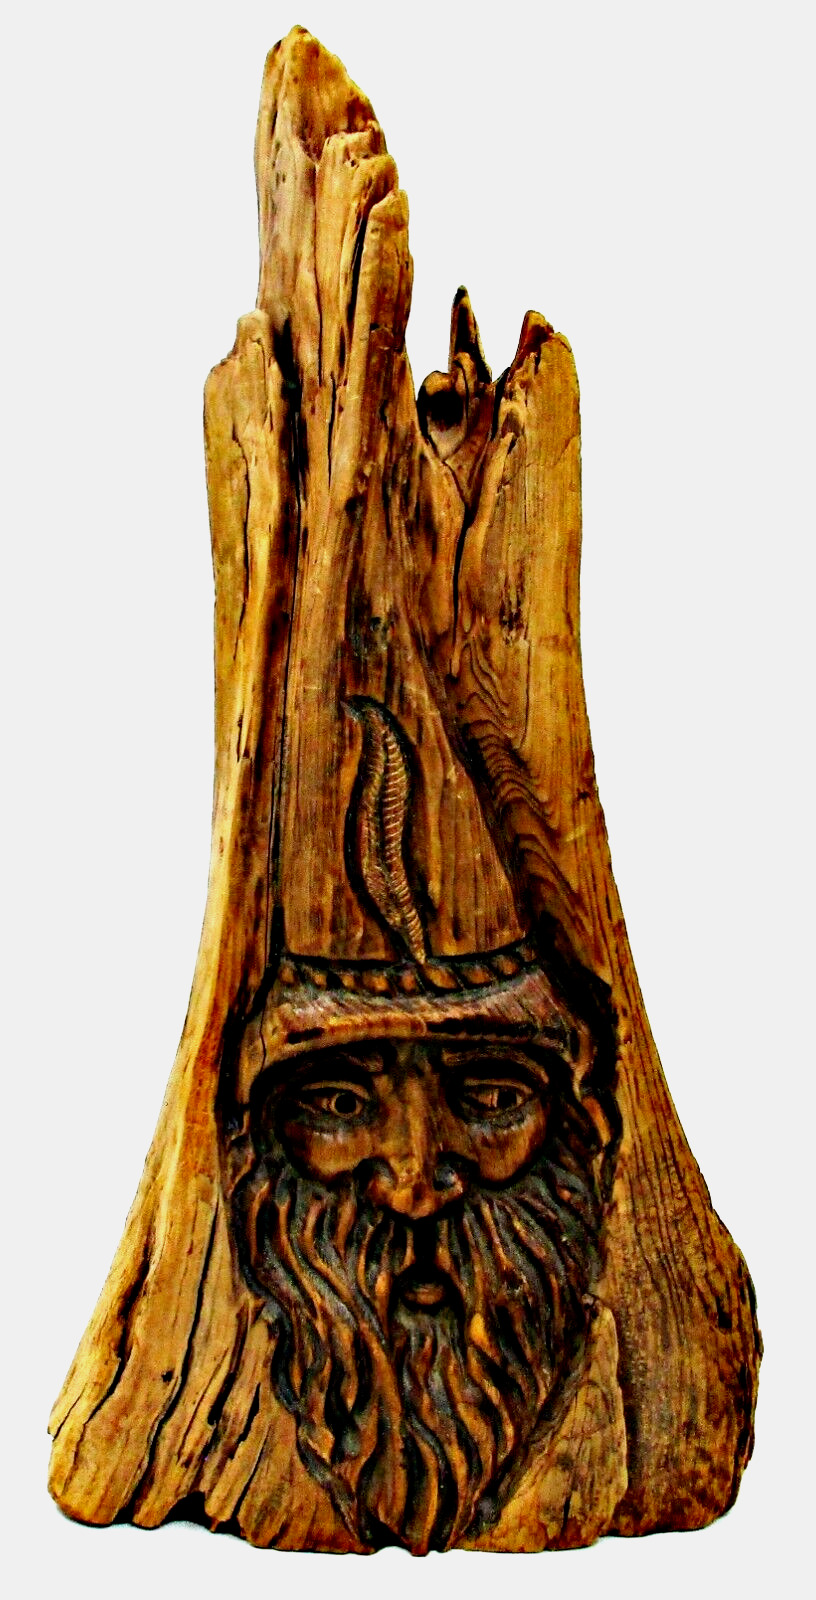 Vintage 90's Signed Jack Leslin Large Wood Carving Tree Spirit Wizard Folk Art